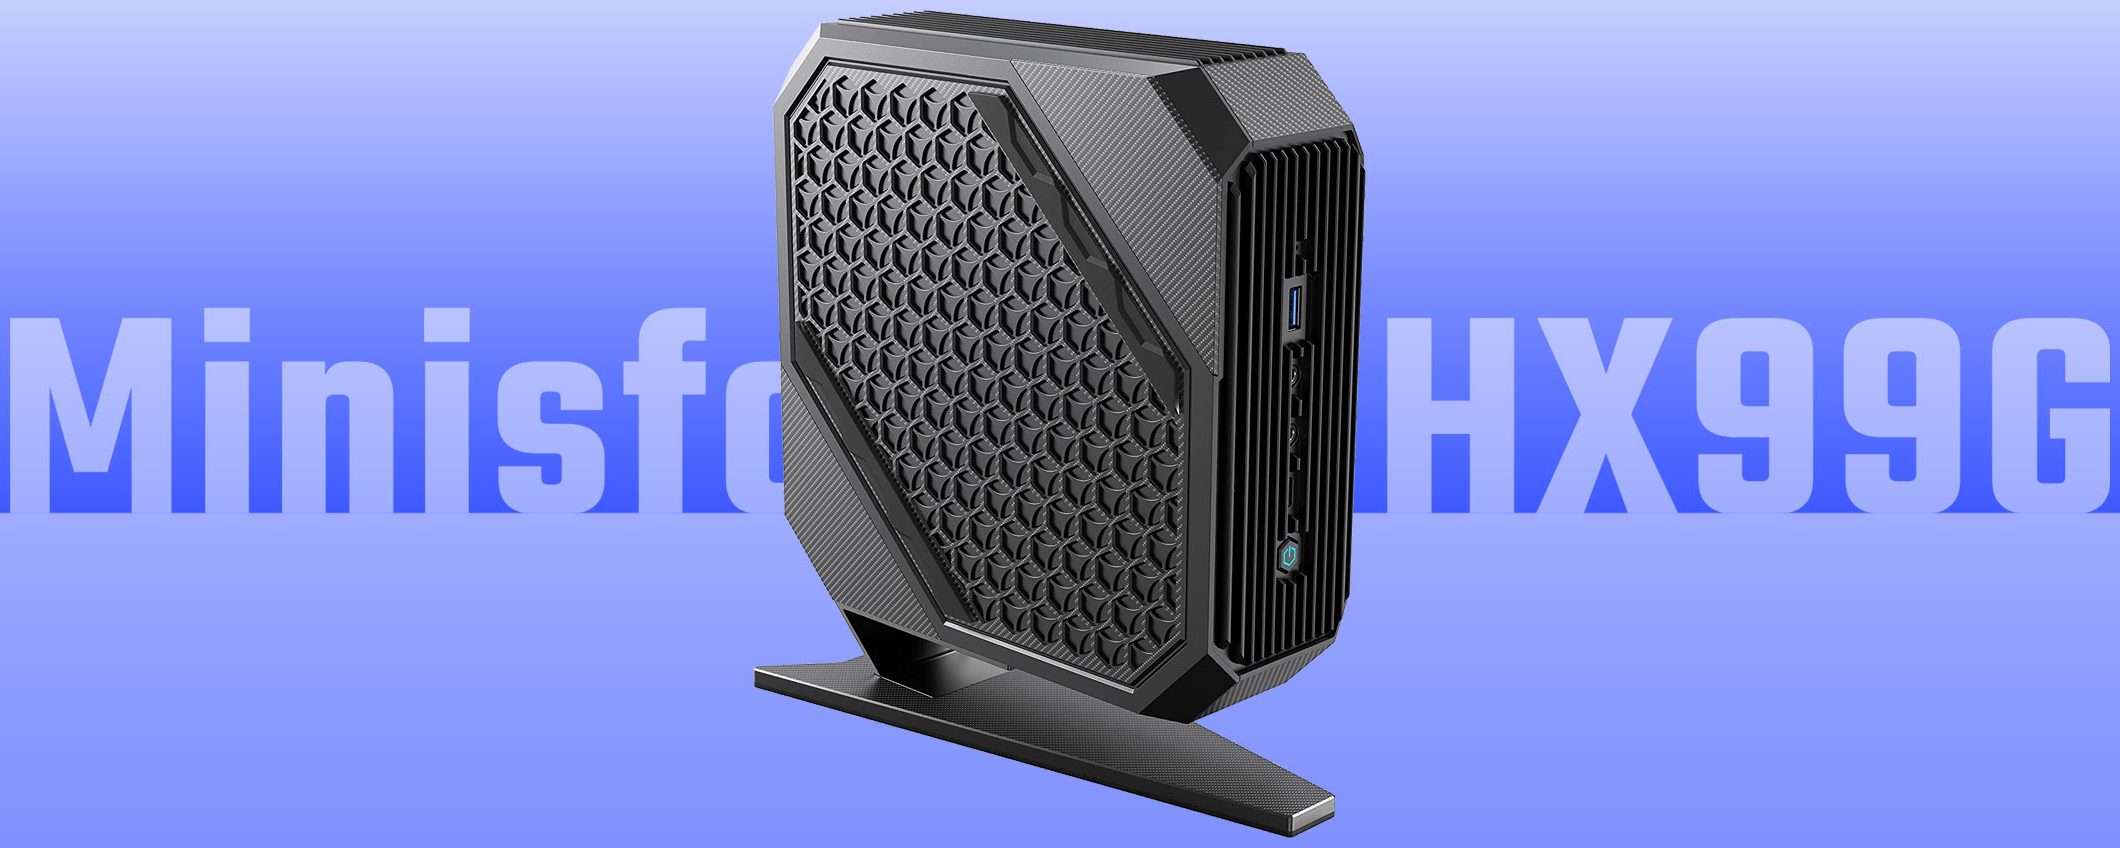 Minisforum HX99G: che mostro di Mini PC (sconto 299€)